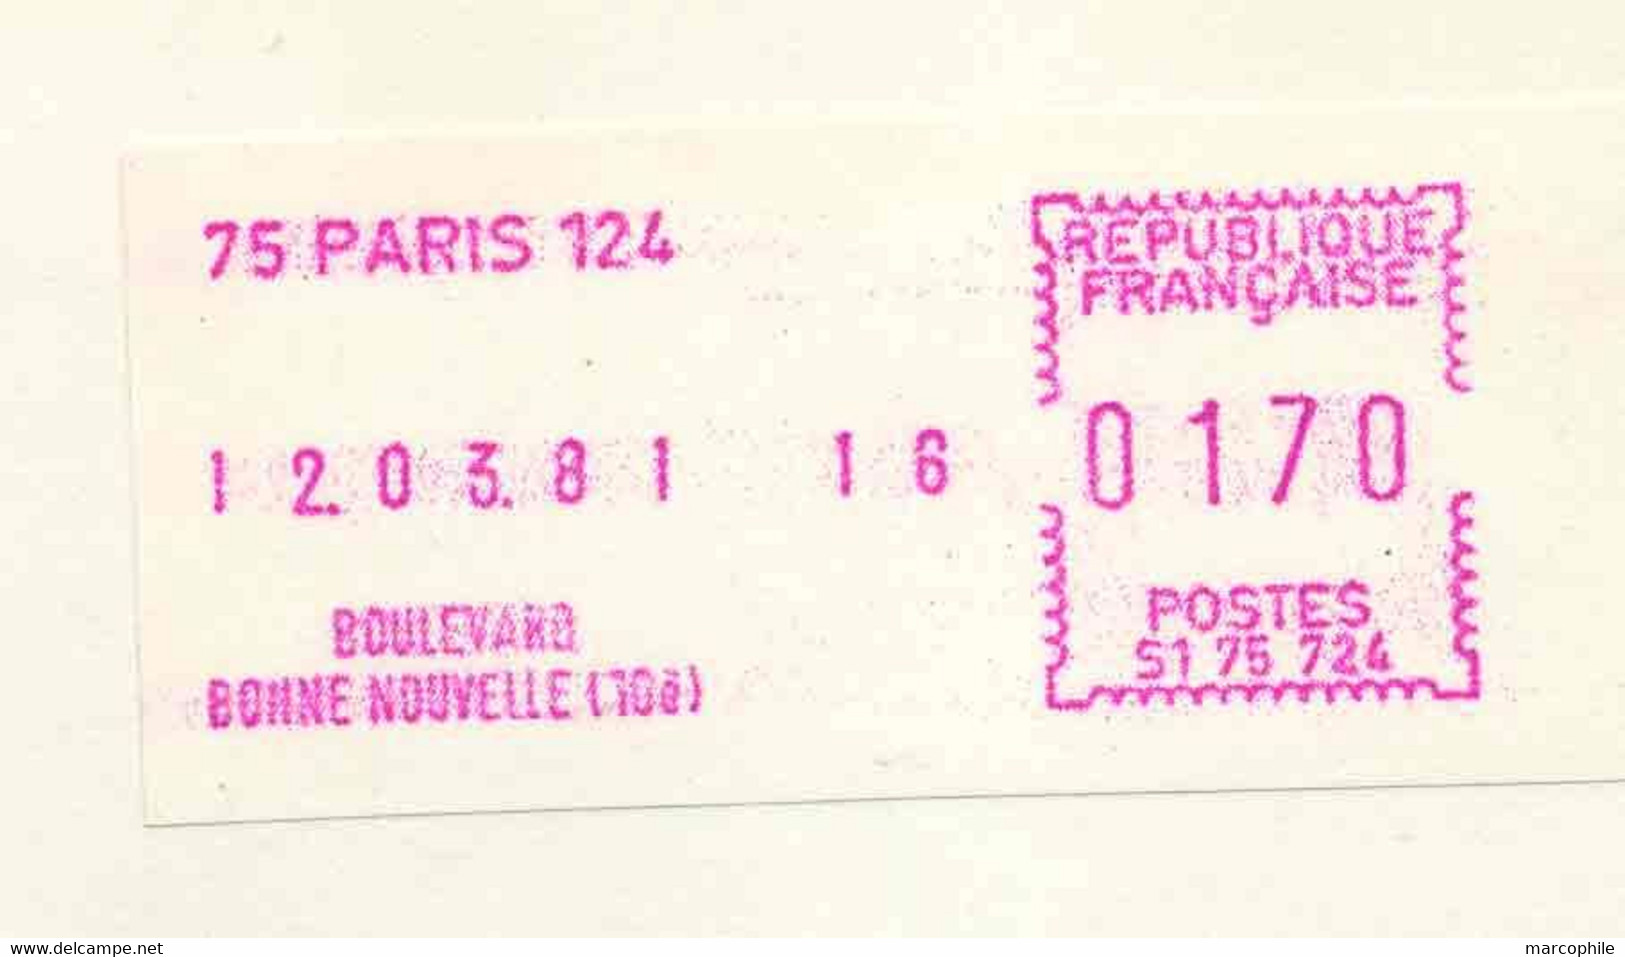 TIMBRE DE DISTRIBUTEUR - 75 PARIS 124 - BD BONNE NOUVELLE / 1981 ENVELOPPE FDC POUR LA SUISSE(ref 9119k) - 1981-84 LS & LSA Prototypes